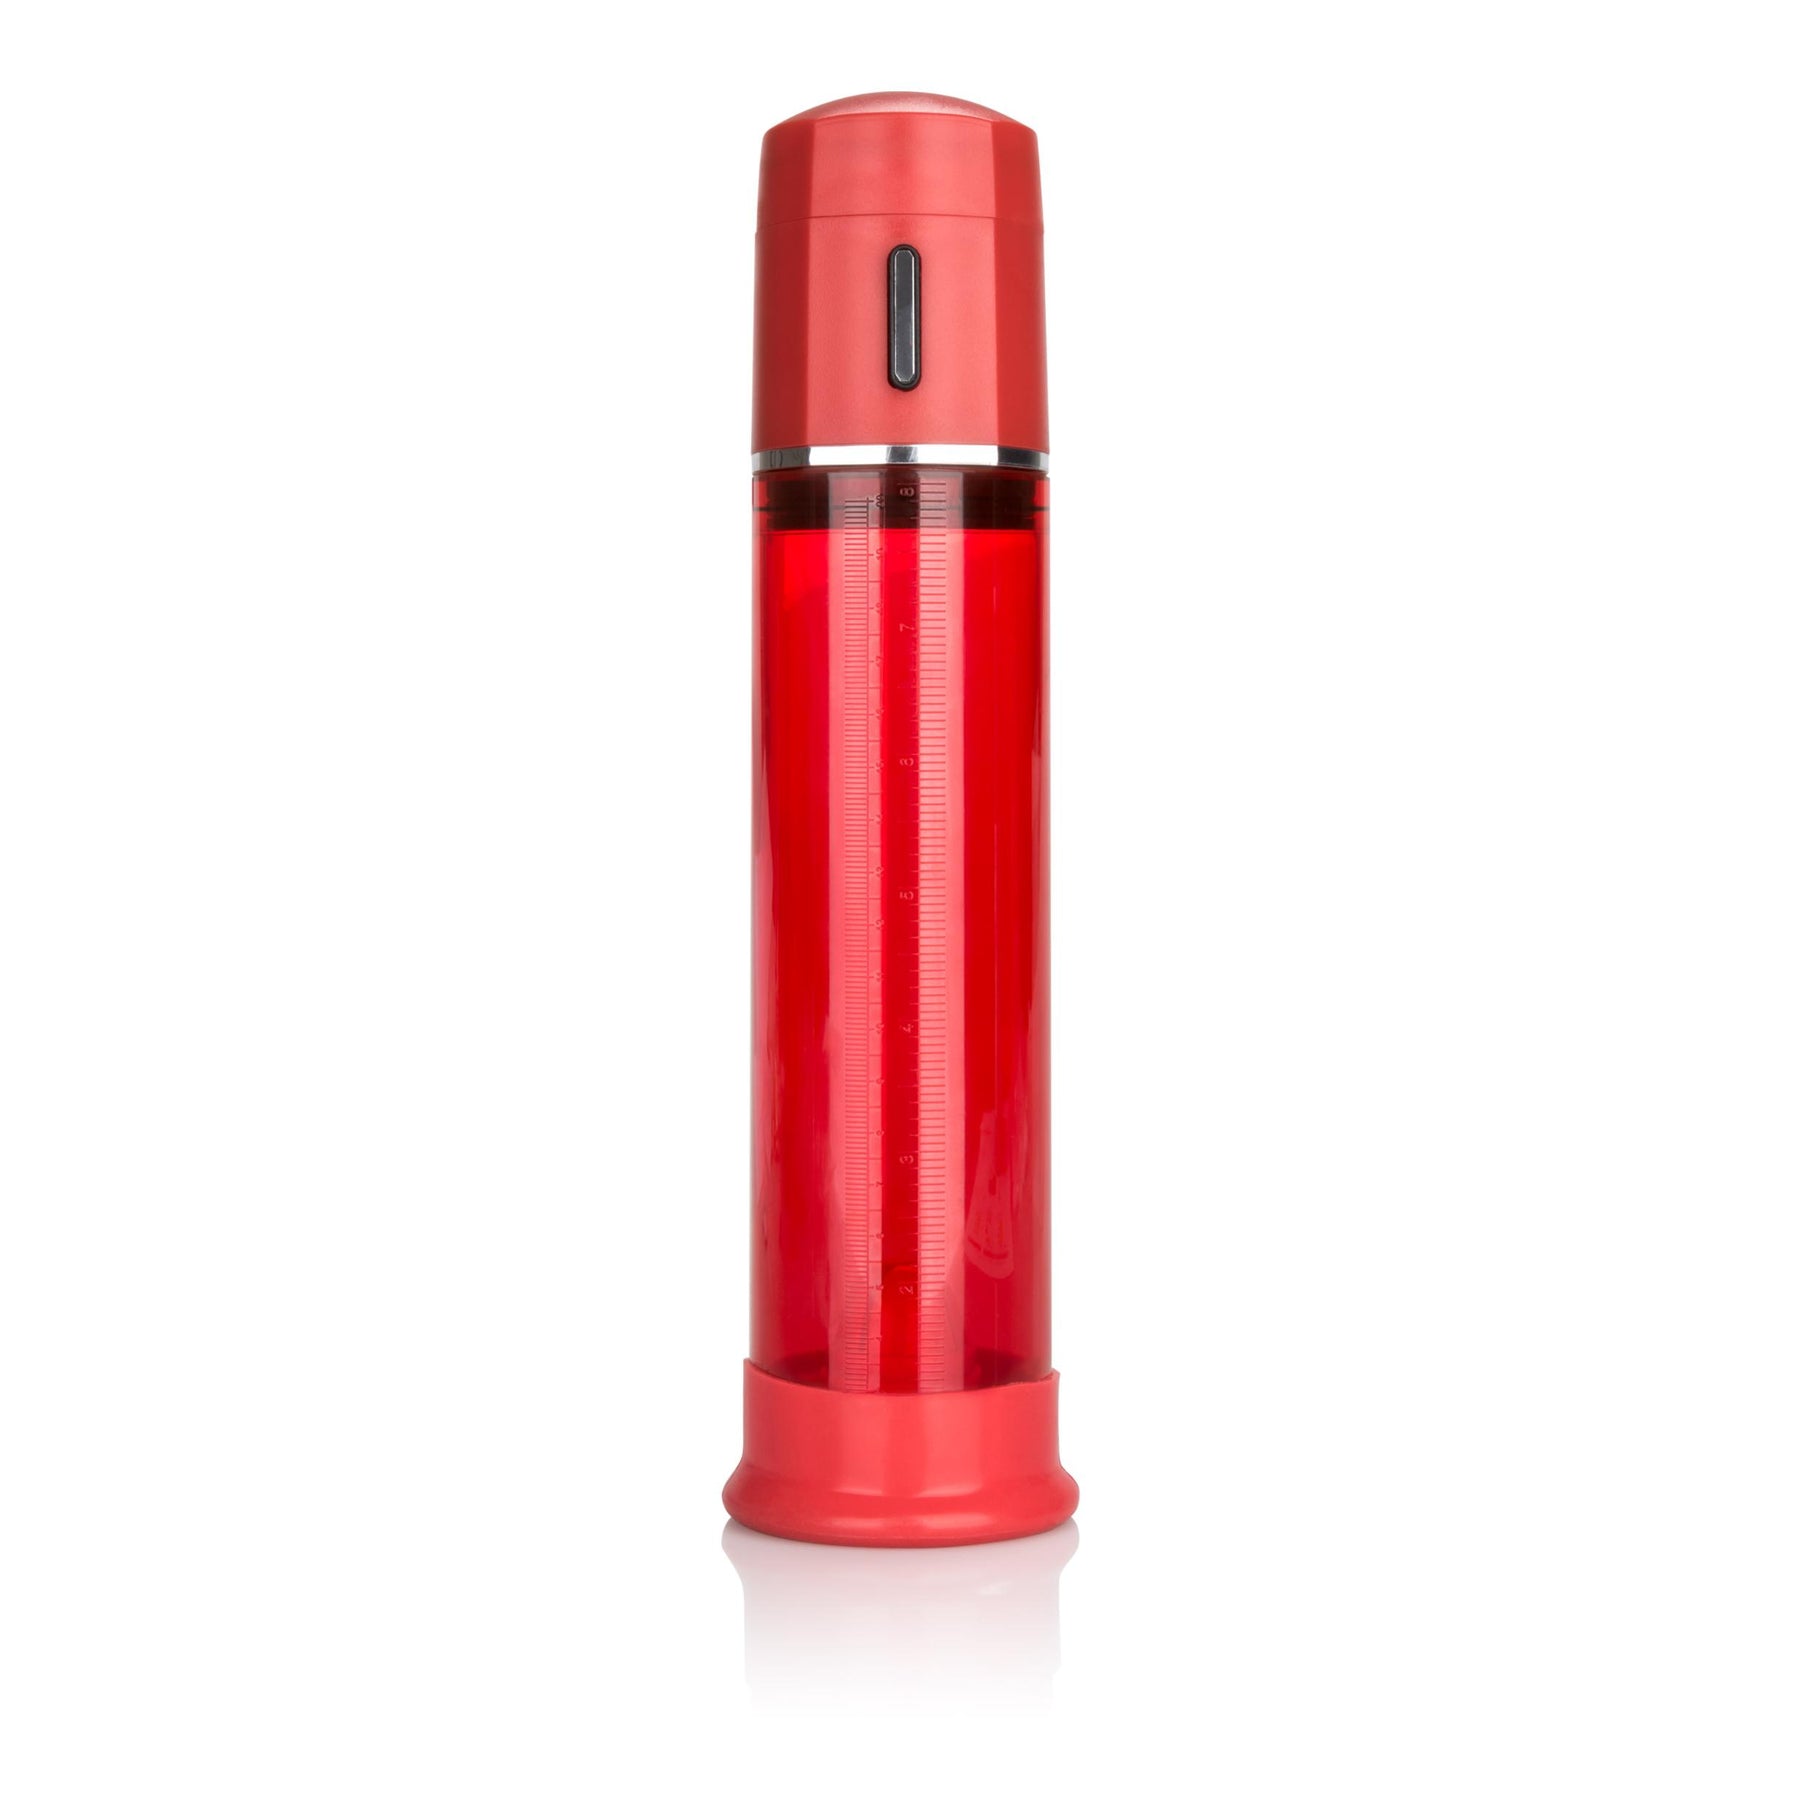 Red penis pump vacuum for penis enlargement